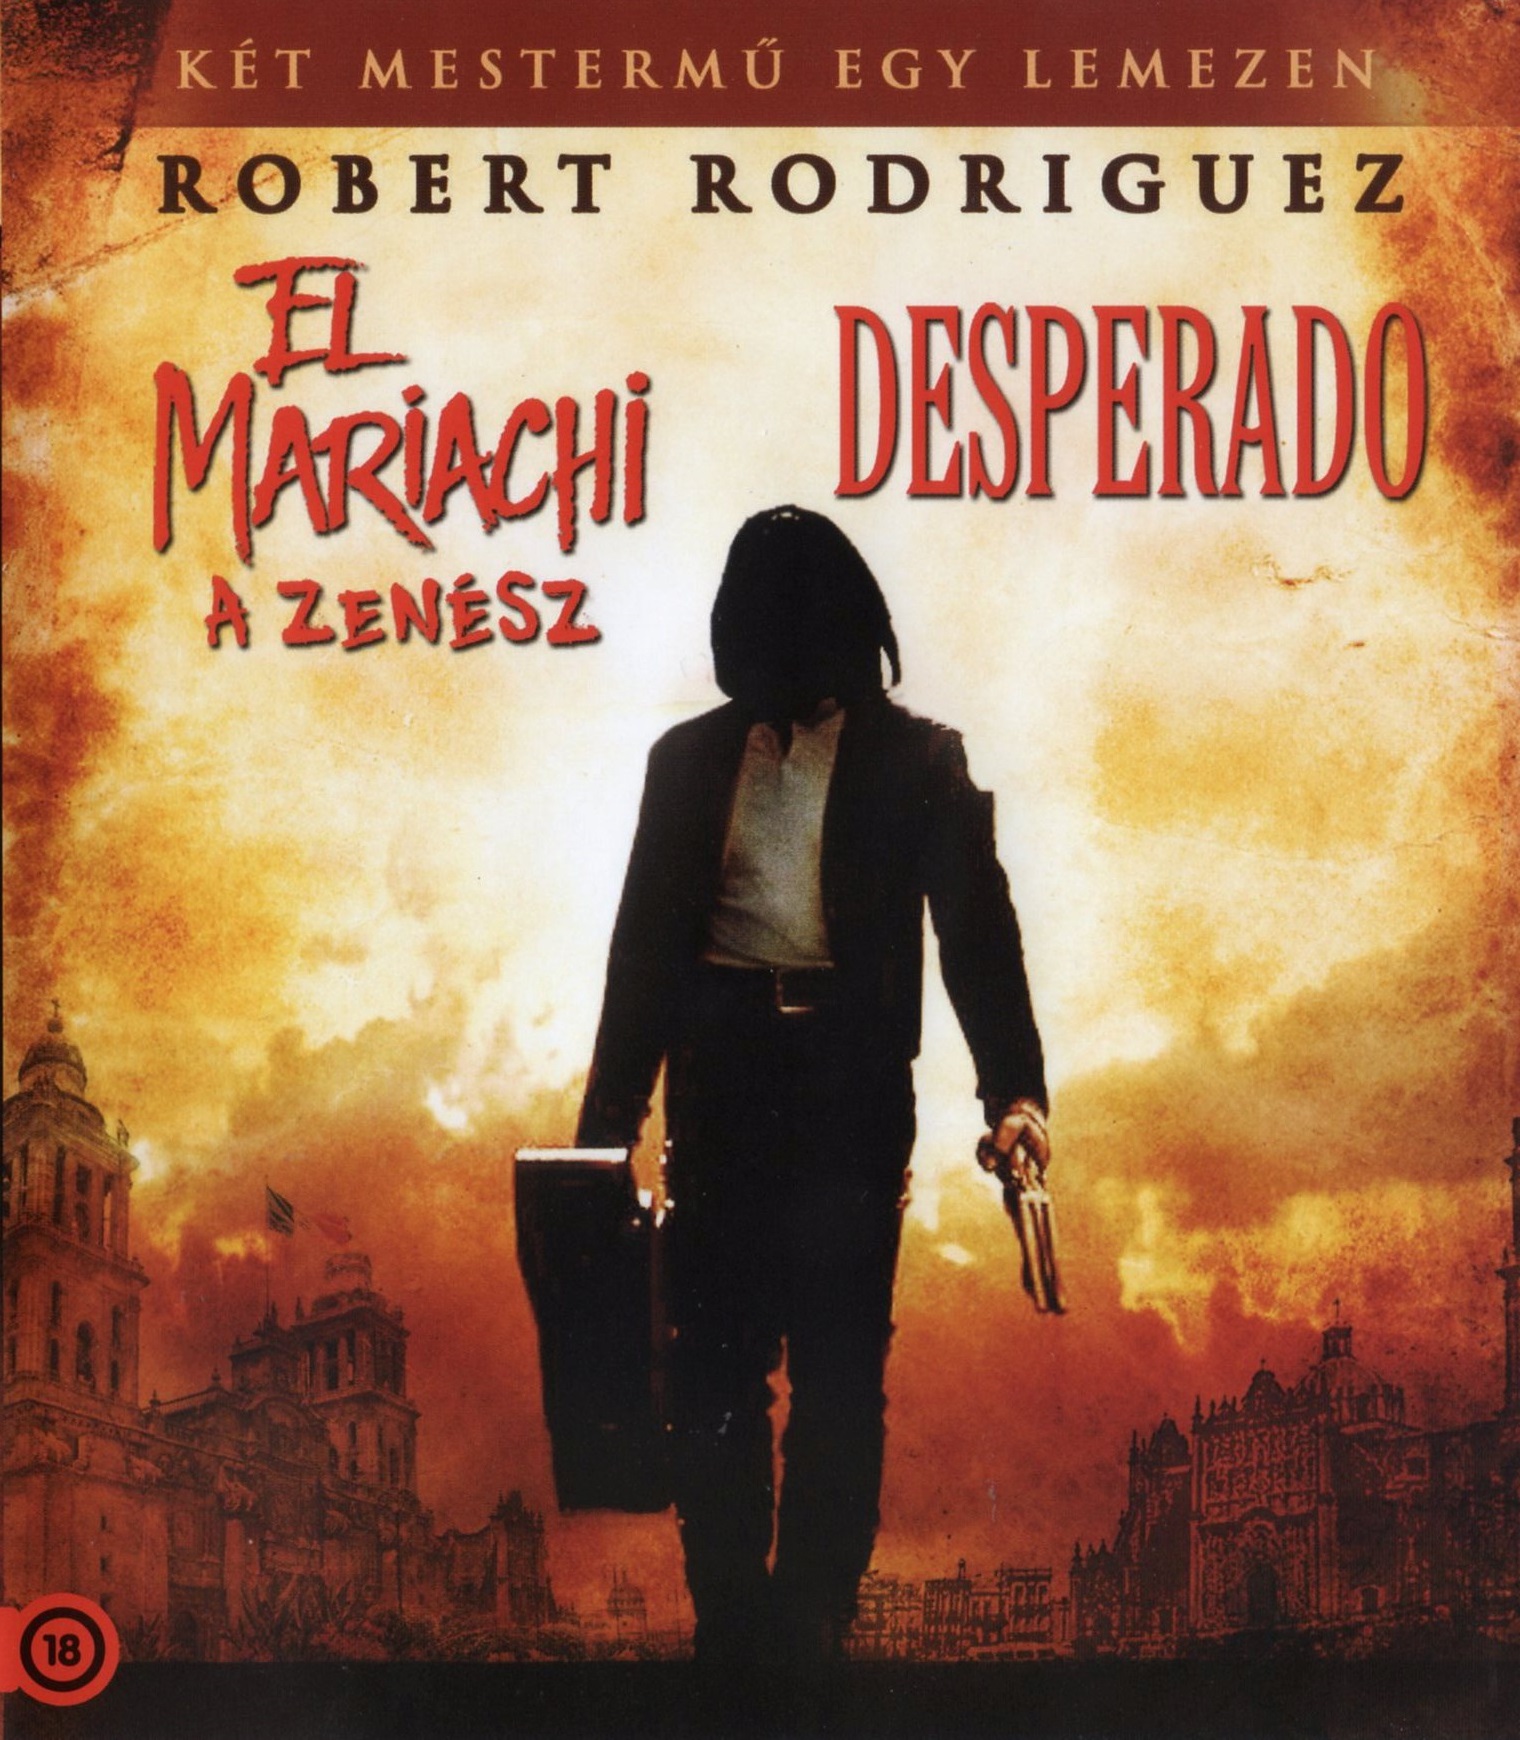 RODRIGUEZ - El Mariachii / Desperado - DVD